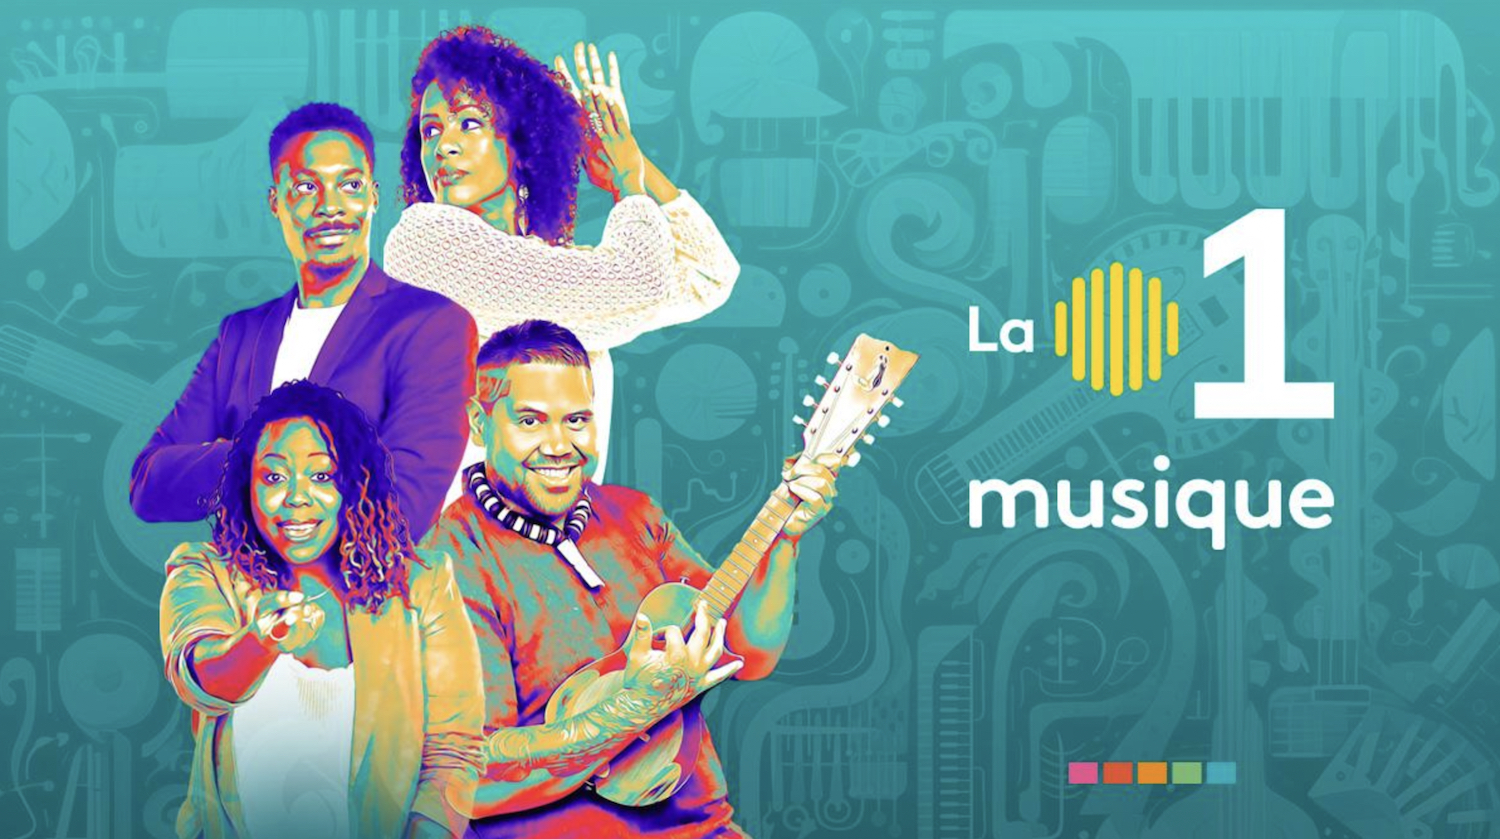 Toute l’offre La 1ère Musique est disponible en direct sur Deezer, Radioplayer, La1ere.fr, l’appli La 1ère et en playlists sur Spotify